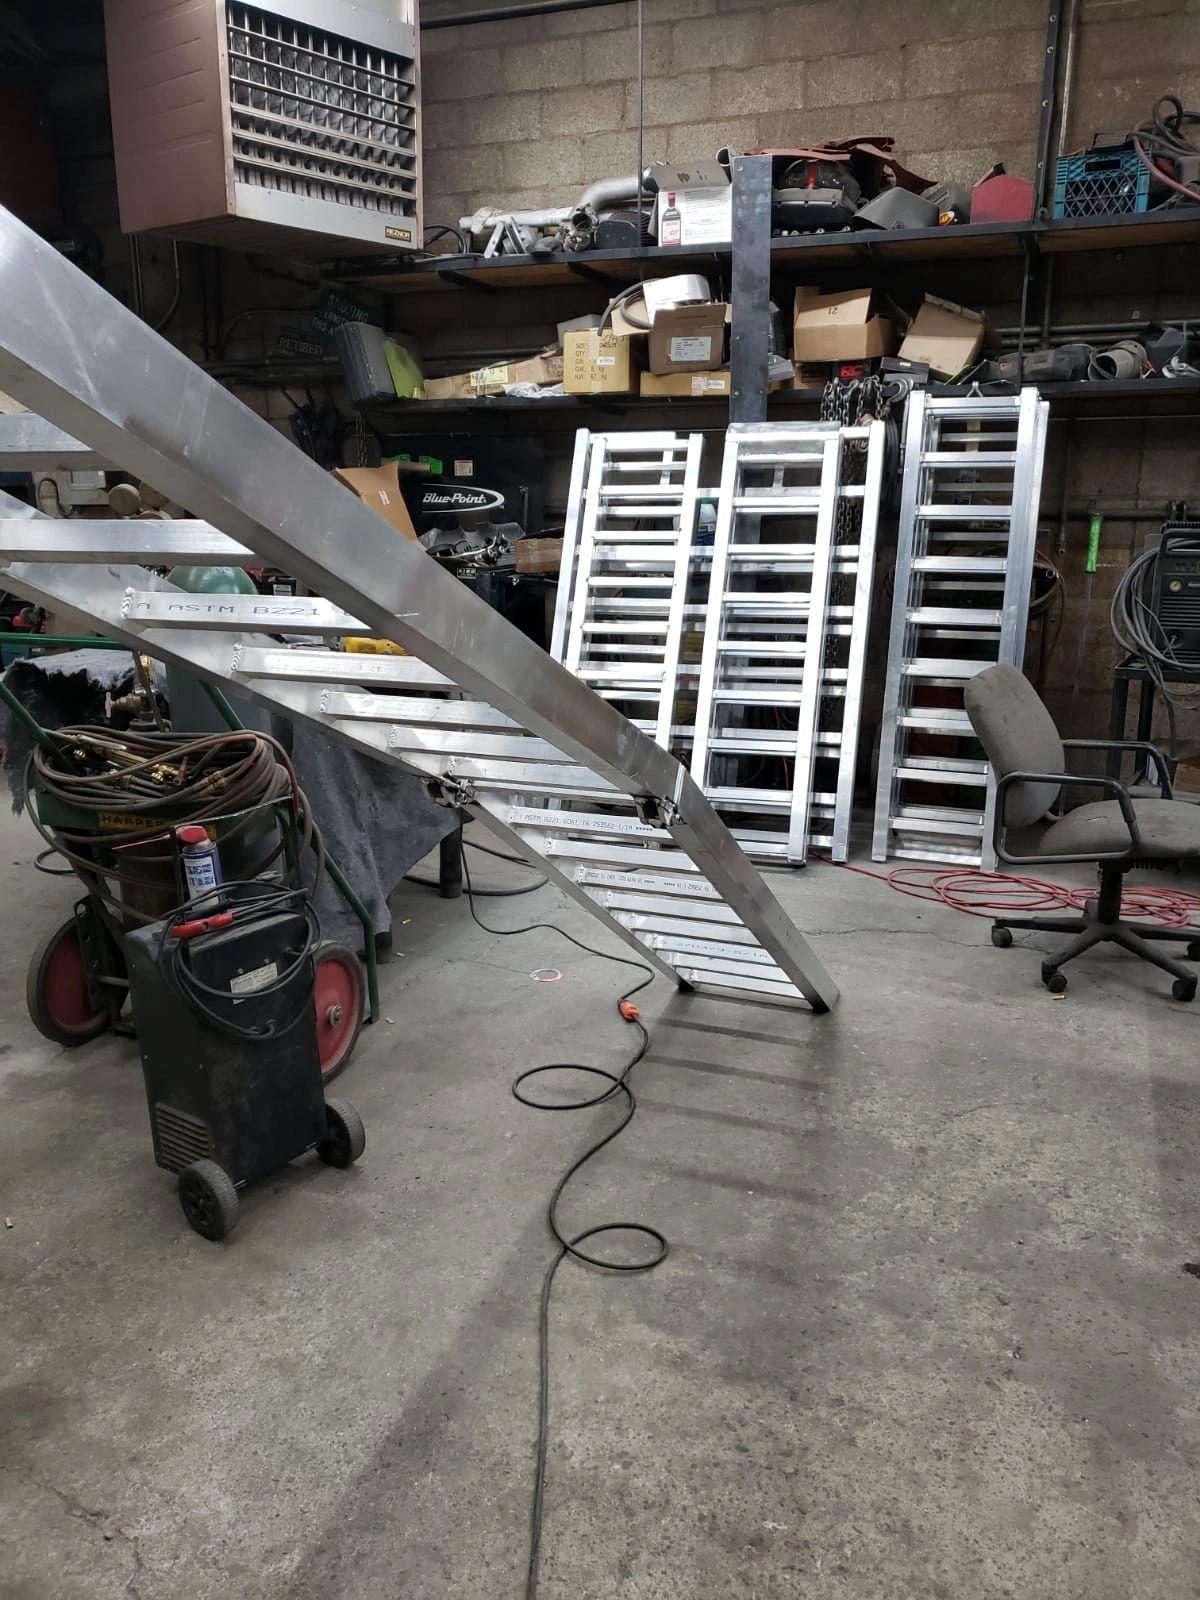 Ramptek 12' aluminum bi-fold UTV ramps